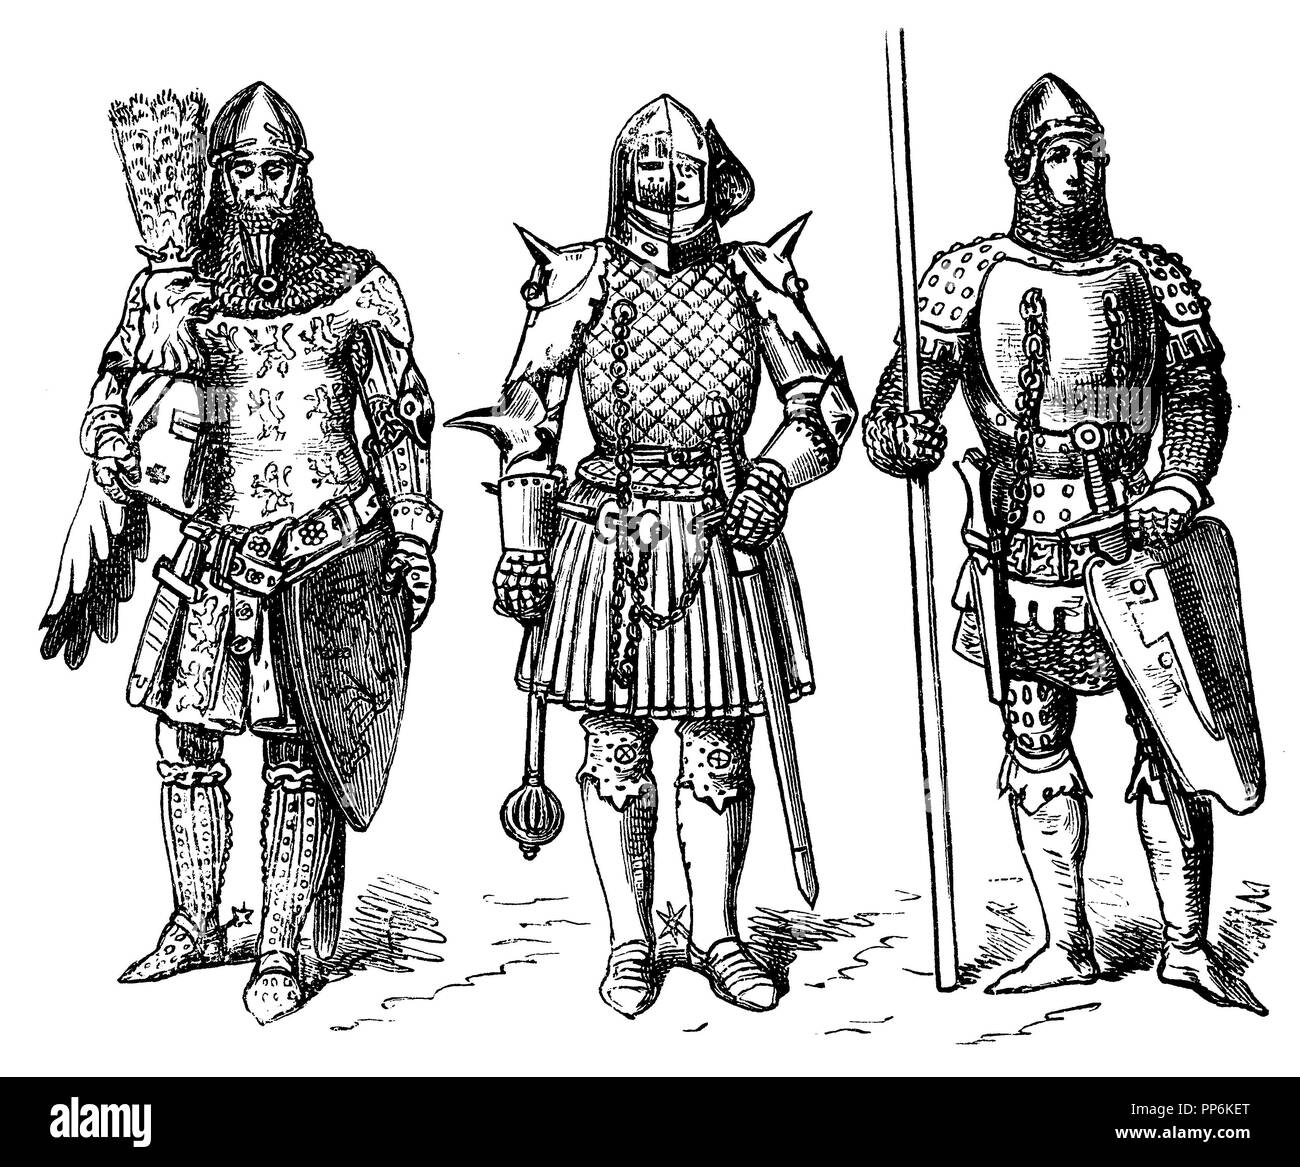 Costume de guerre du Moyen Age, à gauche : Günther von Schwarzbourg (mort en 1349), moyenne : la France, l'heure de Jean le Bon (1350-1364), à droite : l'Allemagne (1350-1400), anonym 1896 Banque D'Images